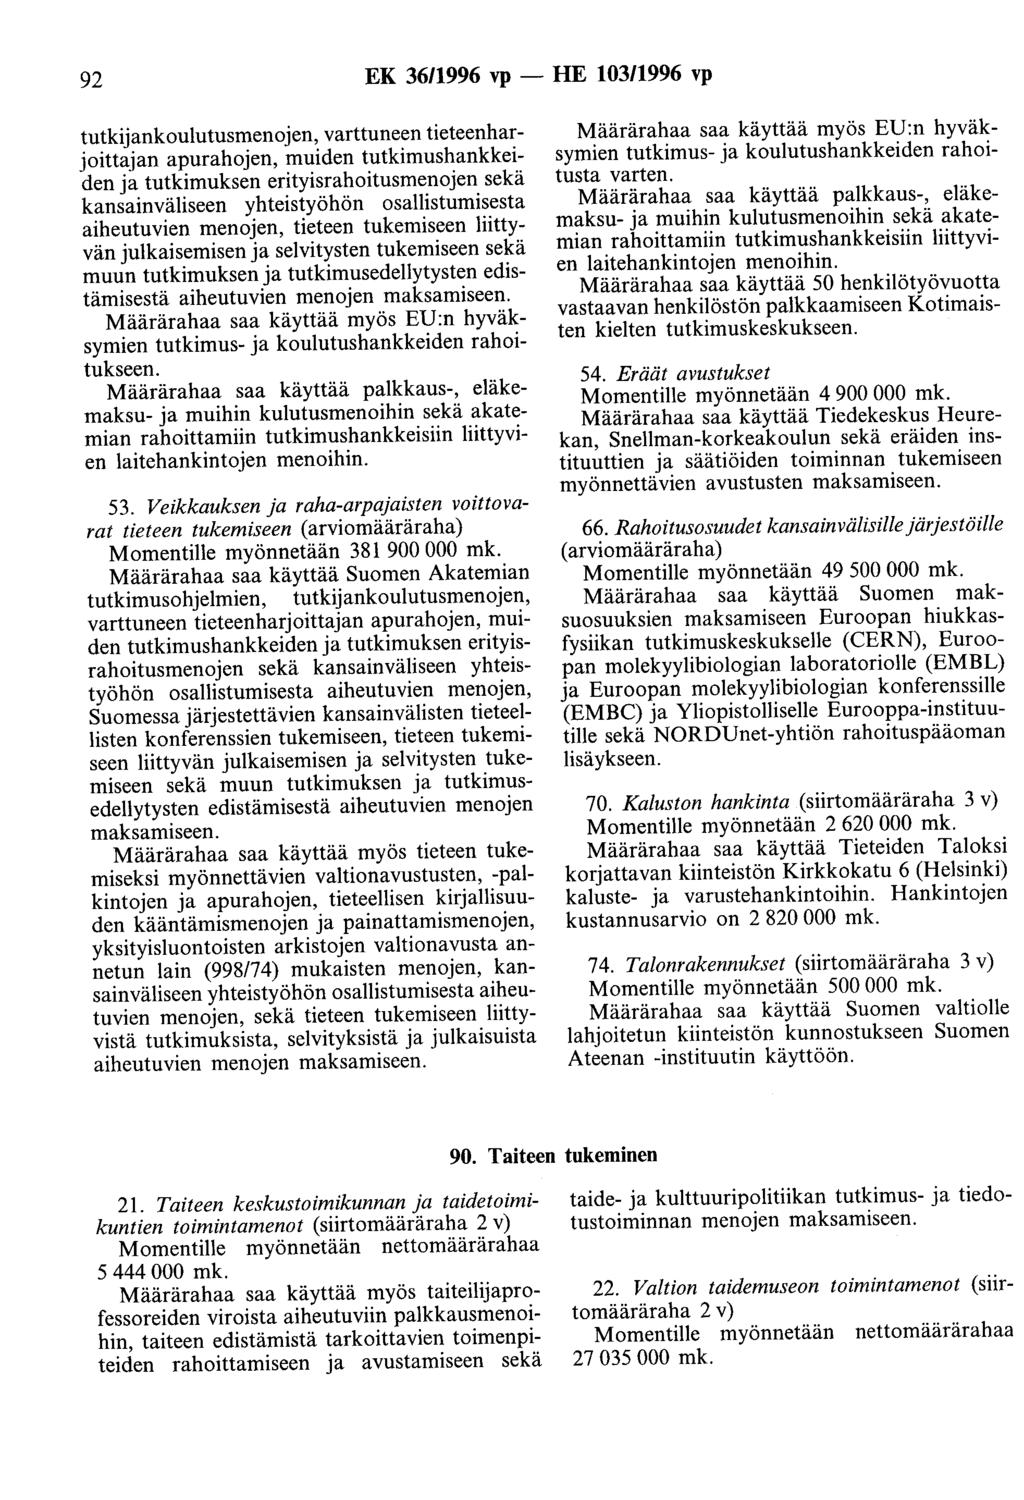 92 EK 36/1996 vp- HE 103/1996 vp tutkijankoulutusmenojen, varttuneen tieteenharjoittajan apurahojen, muiden tutkimushankkeiden ja tutkimuksen erityisrahoitusmenojen sekä kansainväliseen yhteistyöhön